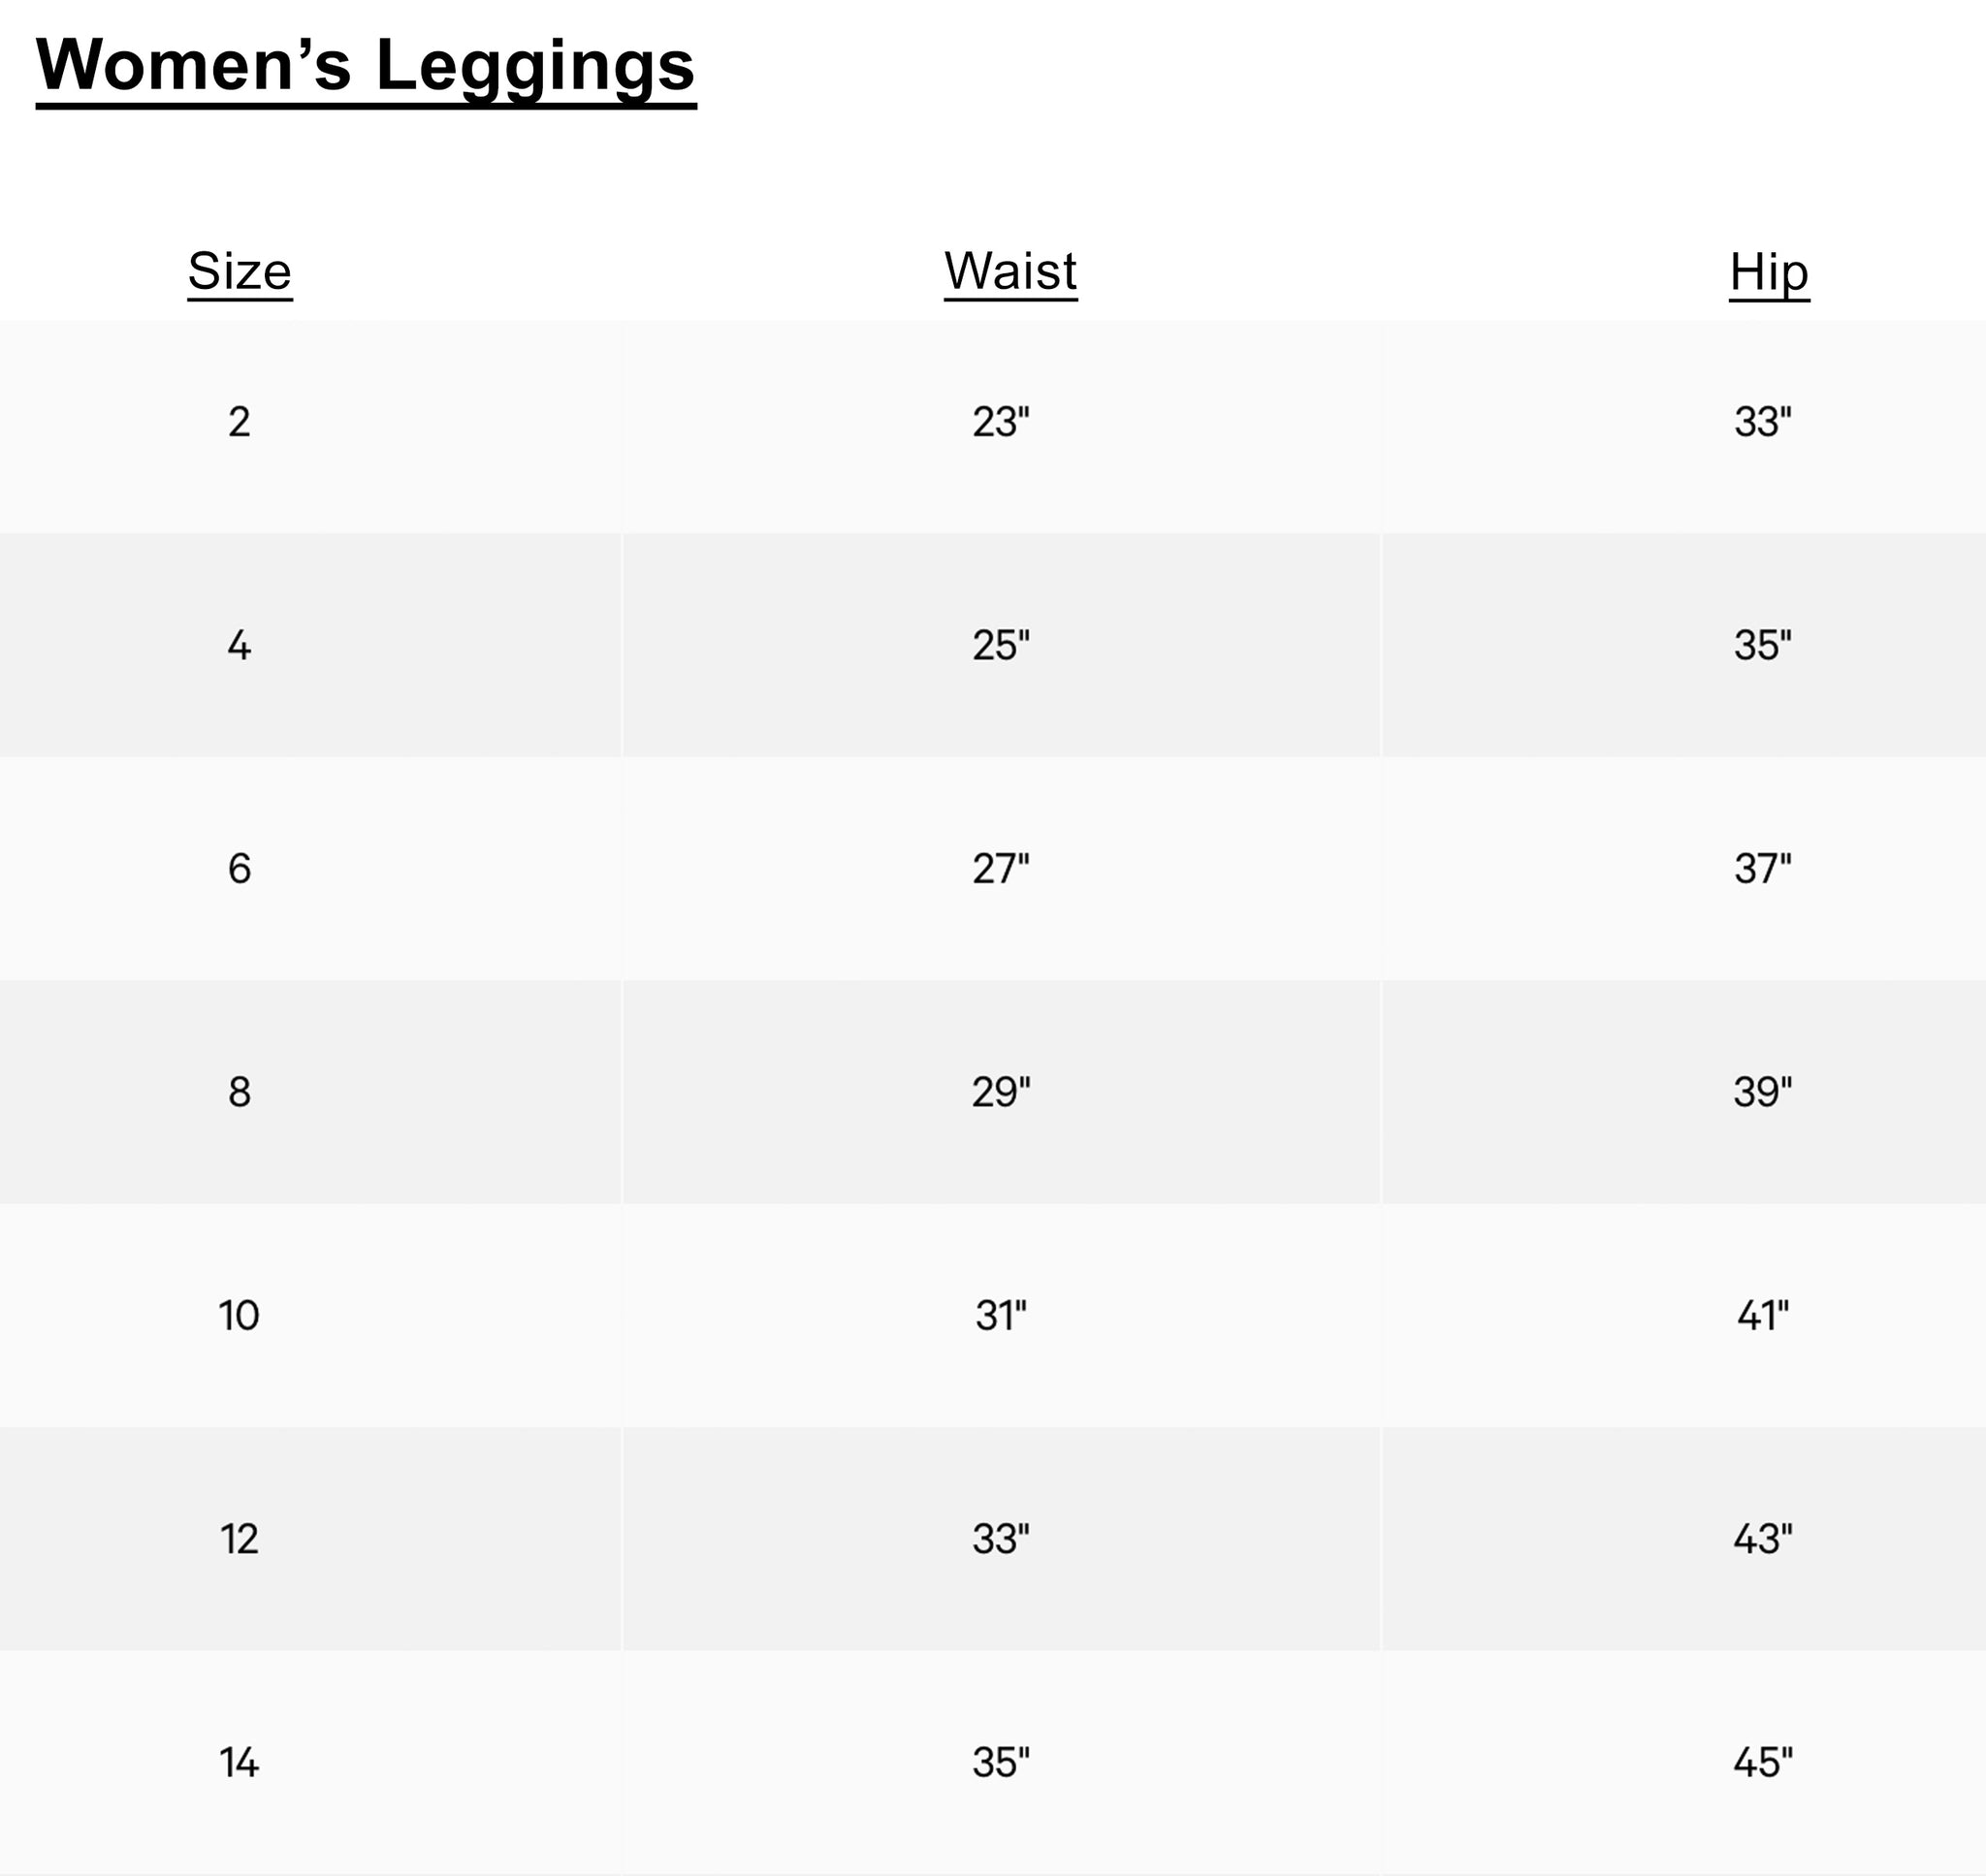 Women's Leggings Size Guide